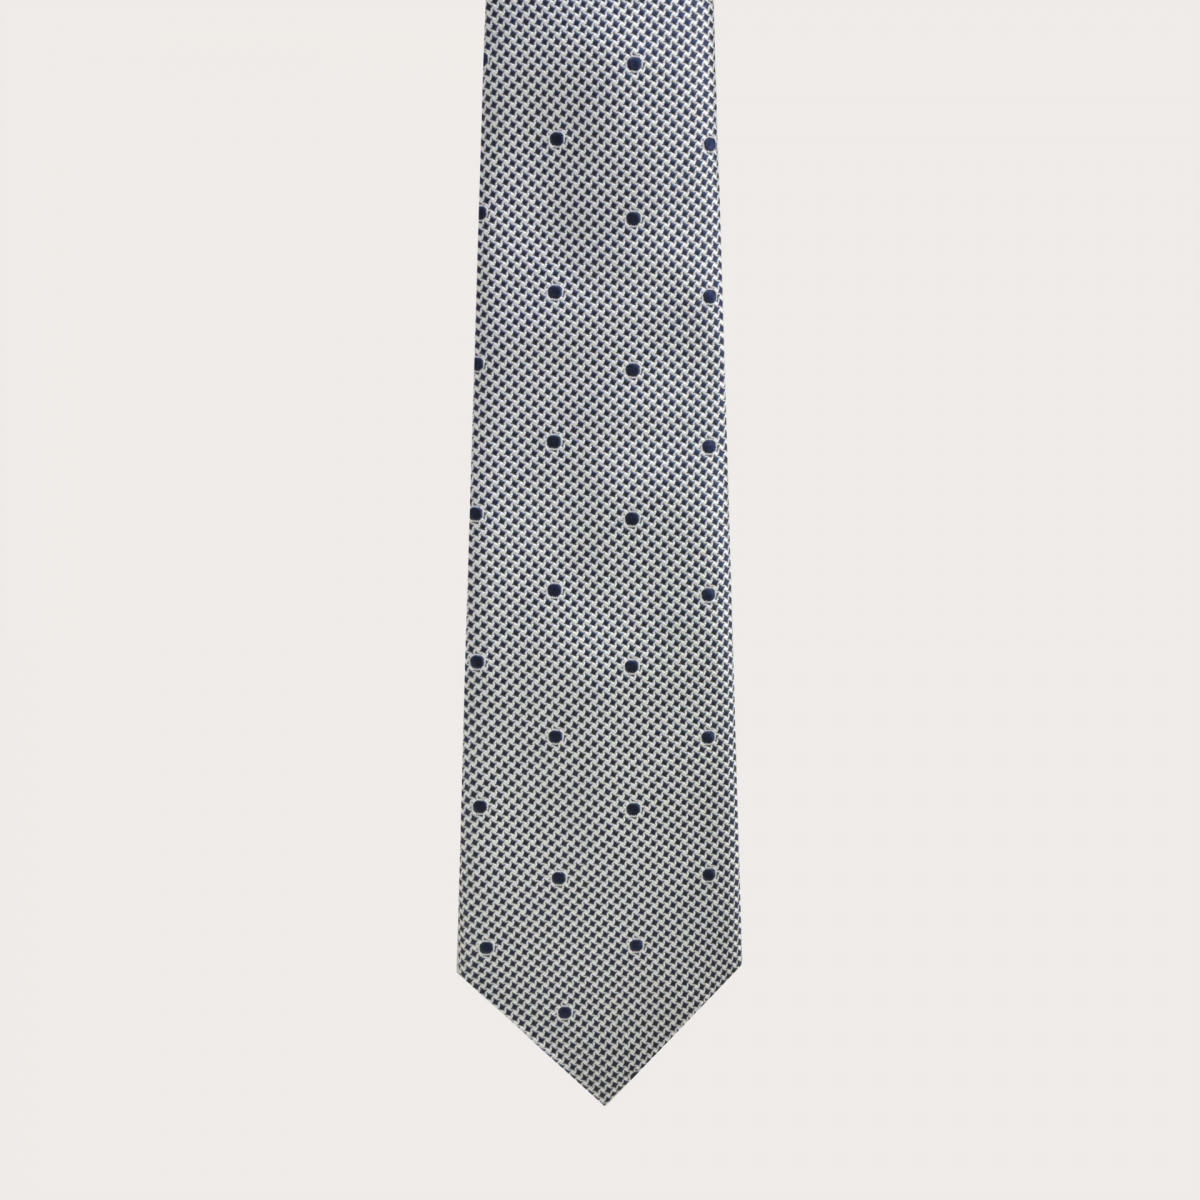 Cravatta in seta jacquard, fantasia bianca e blu